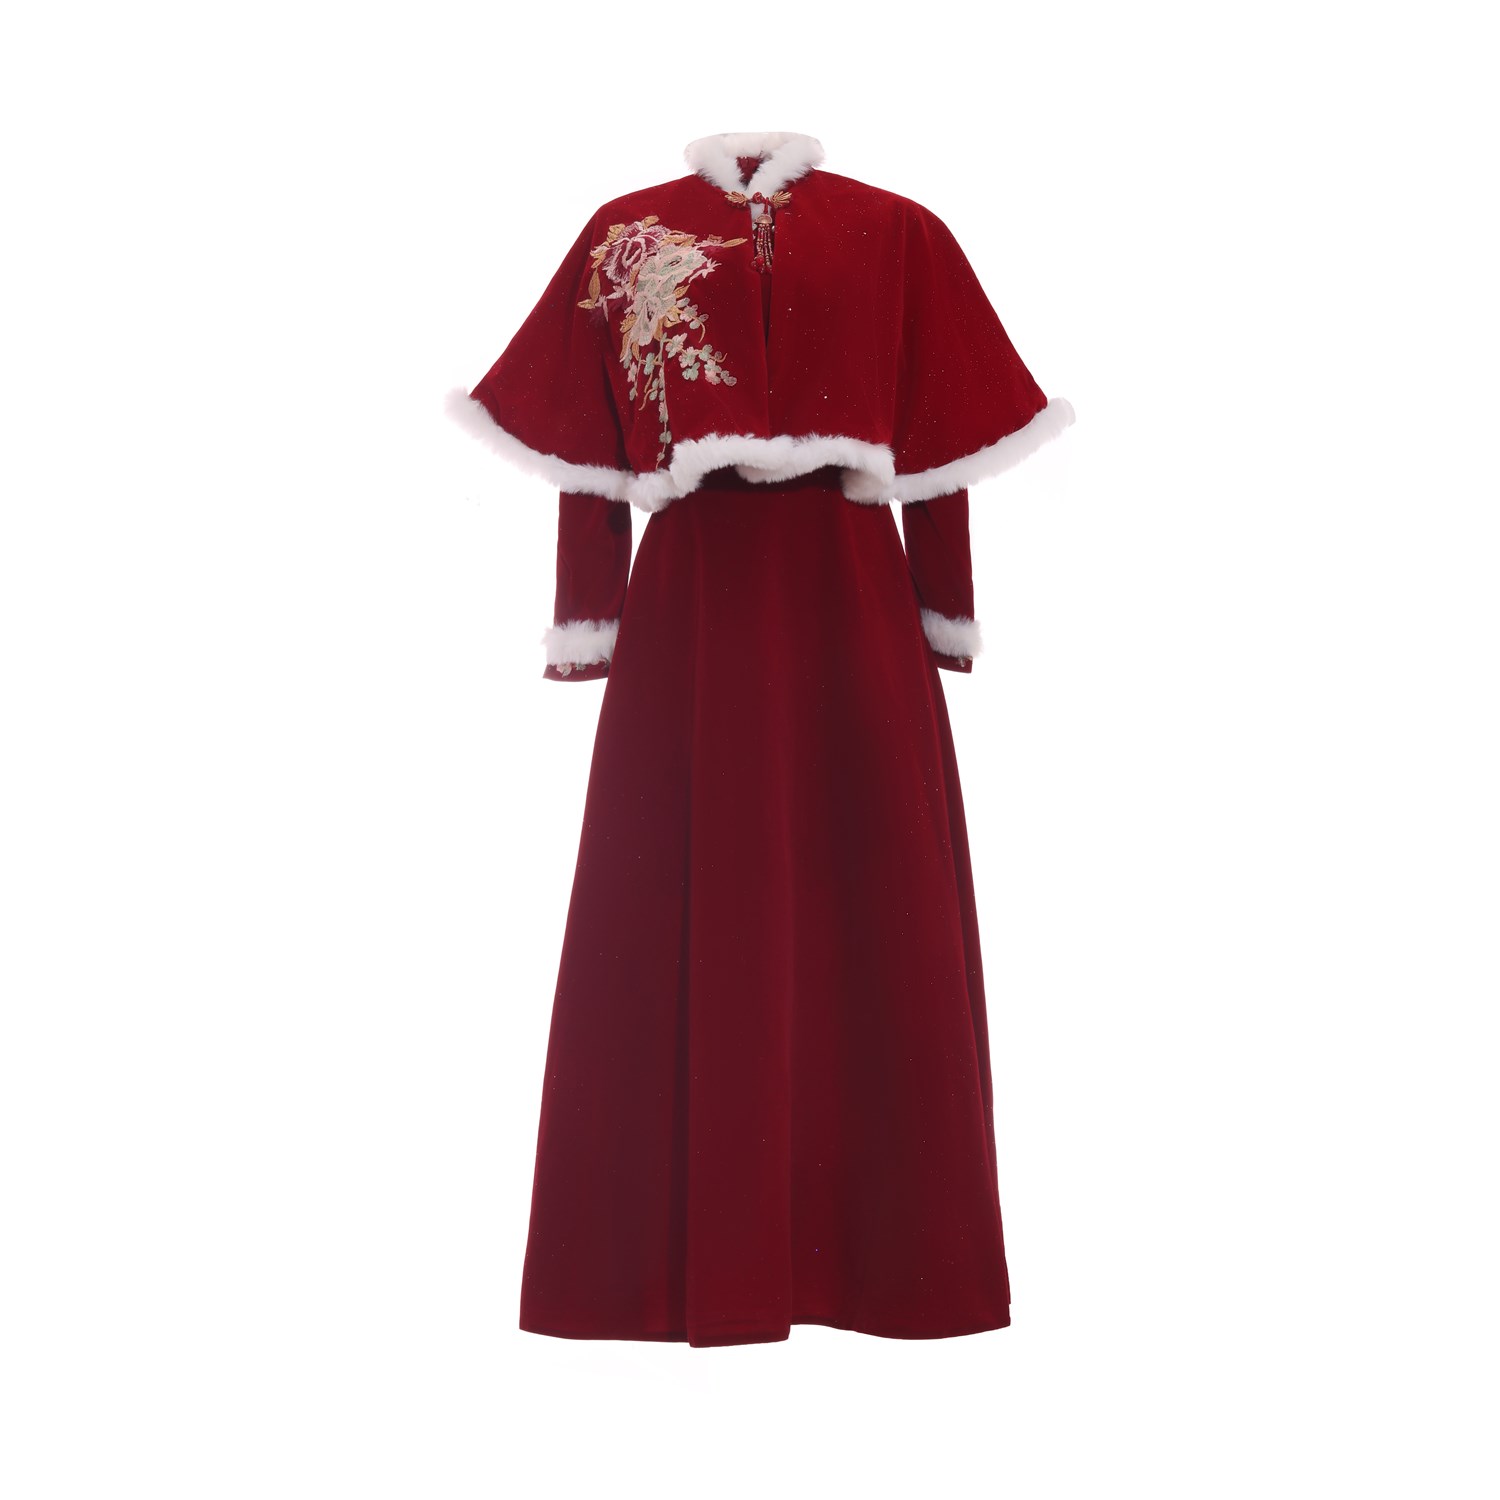 新年战袍连衣裙套装旗袍斗篷式新娘敬酒服晚礼服红色结婚长袖毛呢